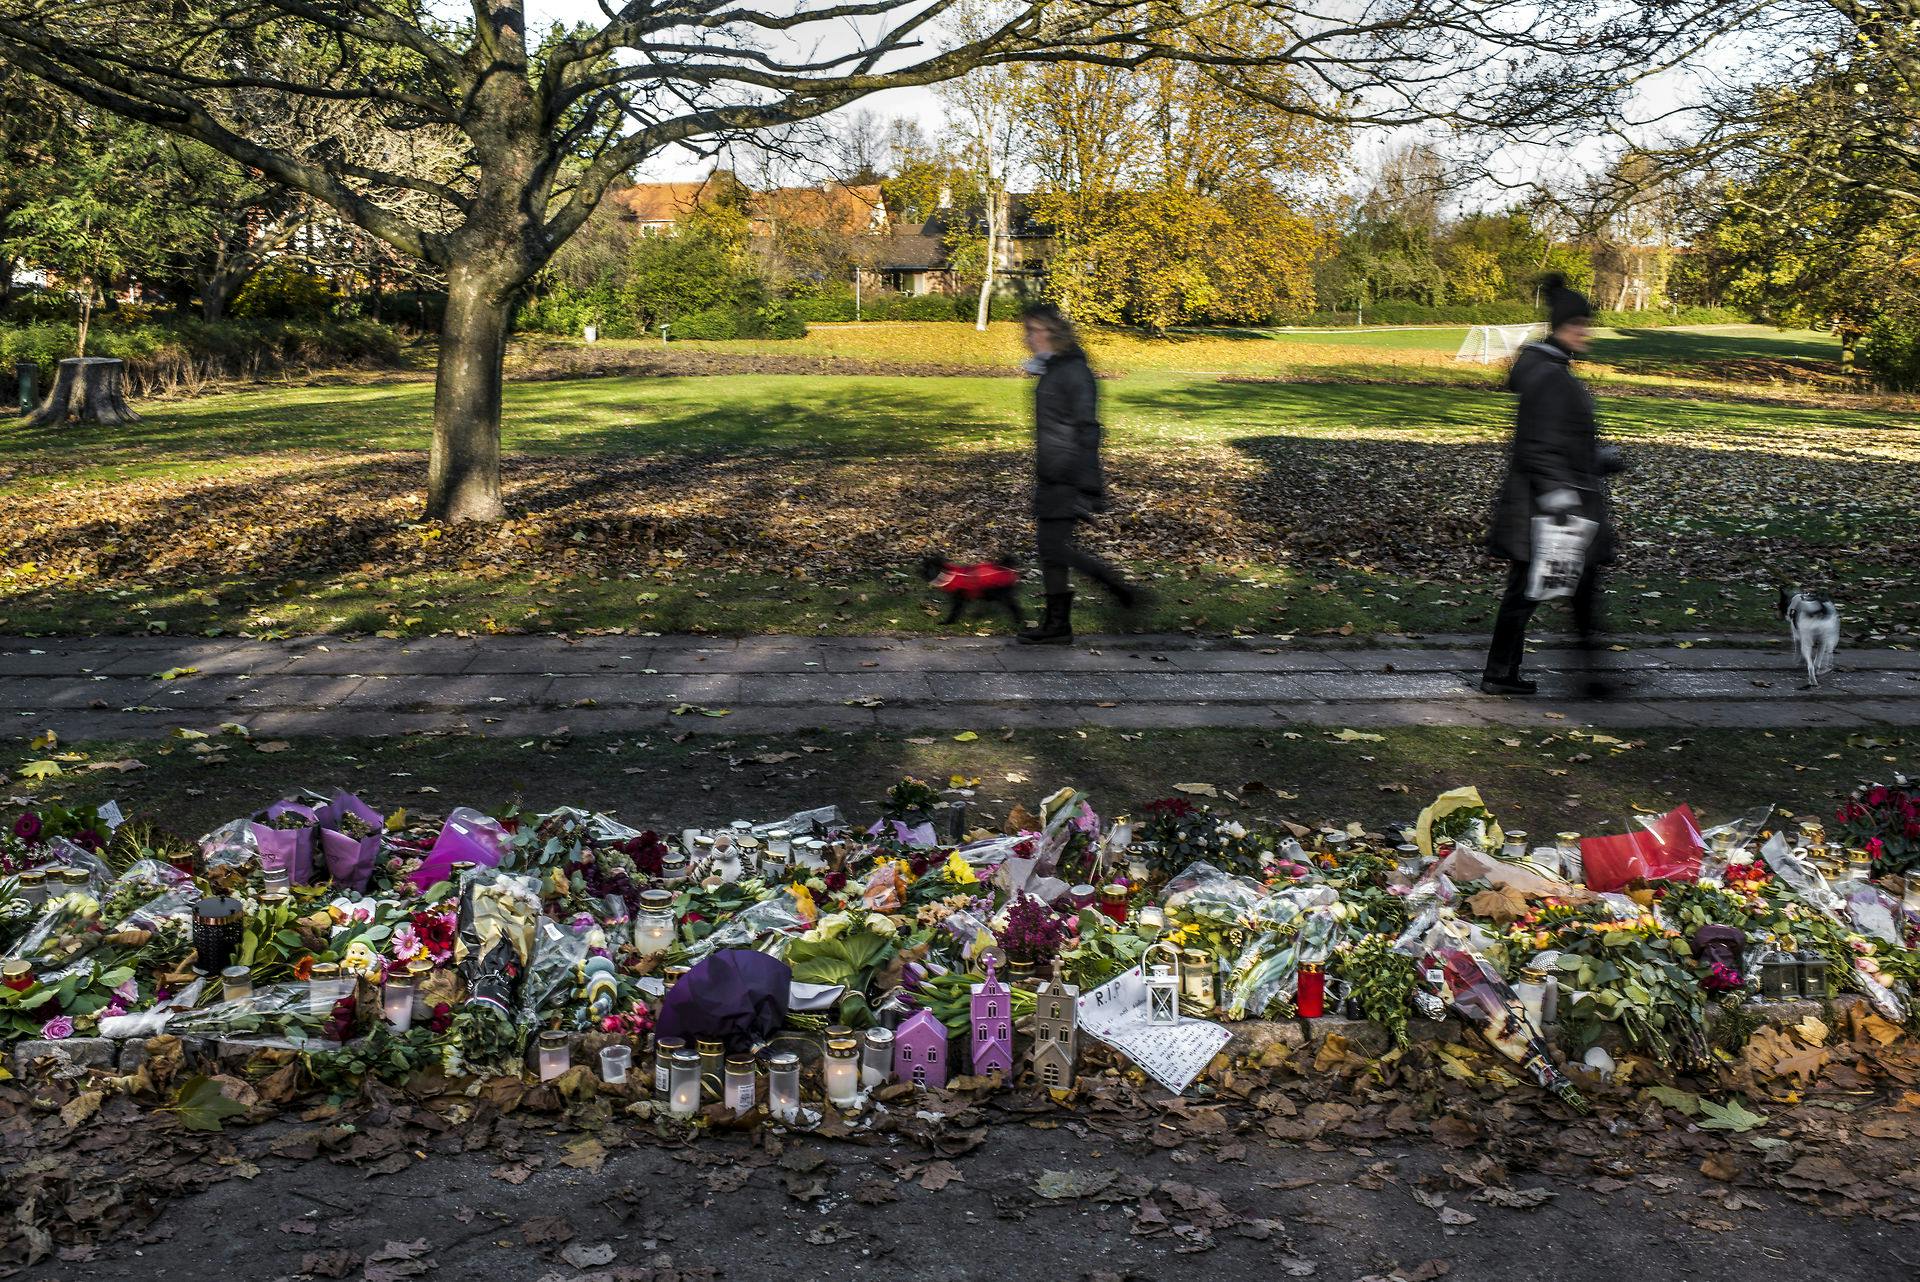 Højgravide Louise Borglit blev dræbt i Elverparken 4. november 2016. Her er der blevet lagt blomster tæt på gravstedet.
